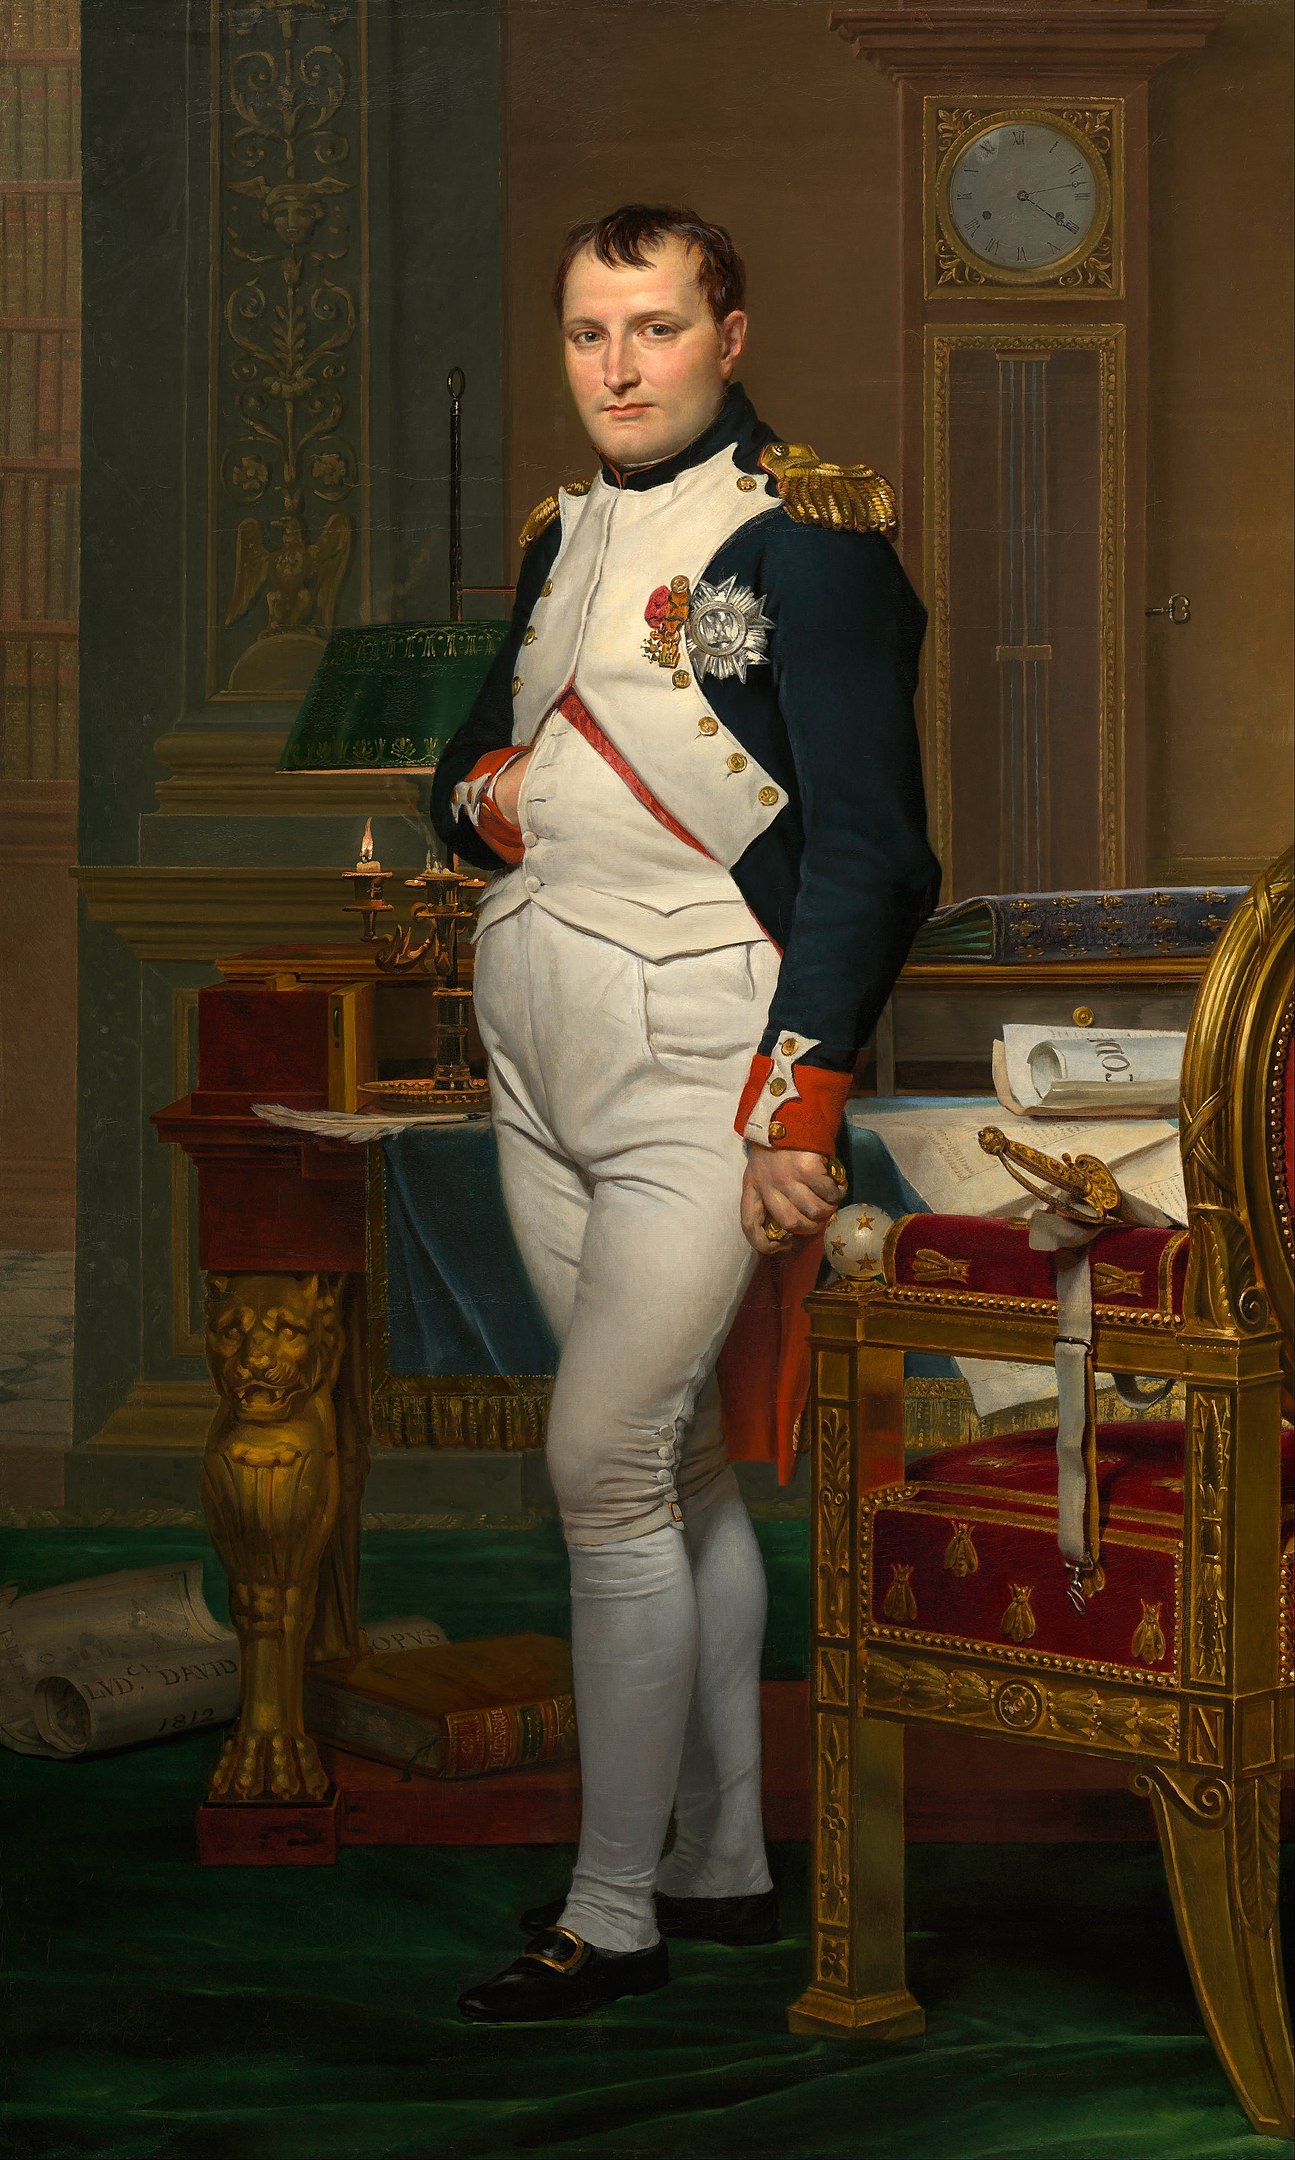 Retrat de Napoleó Bonaparte fet per Jacques-Louis David